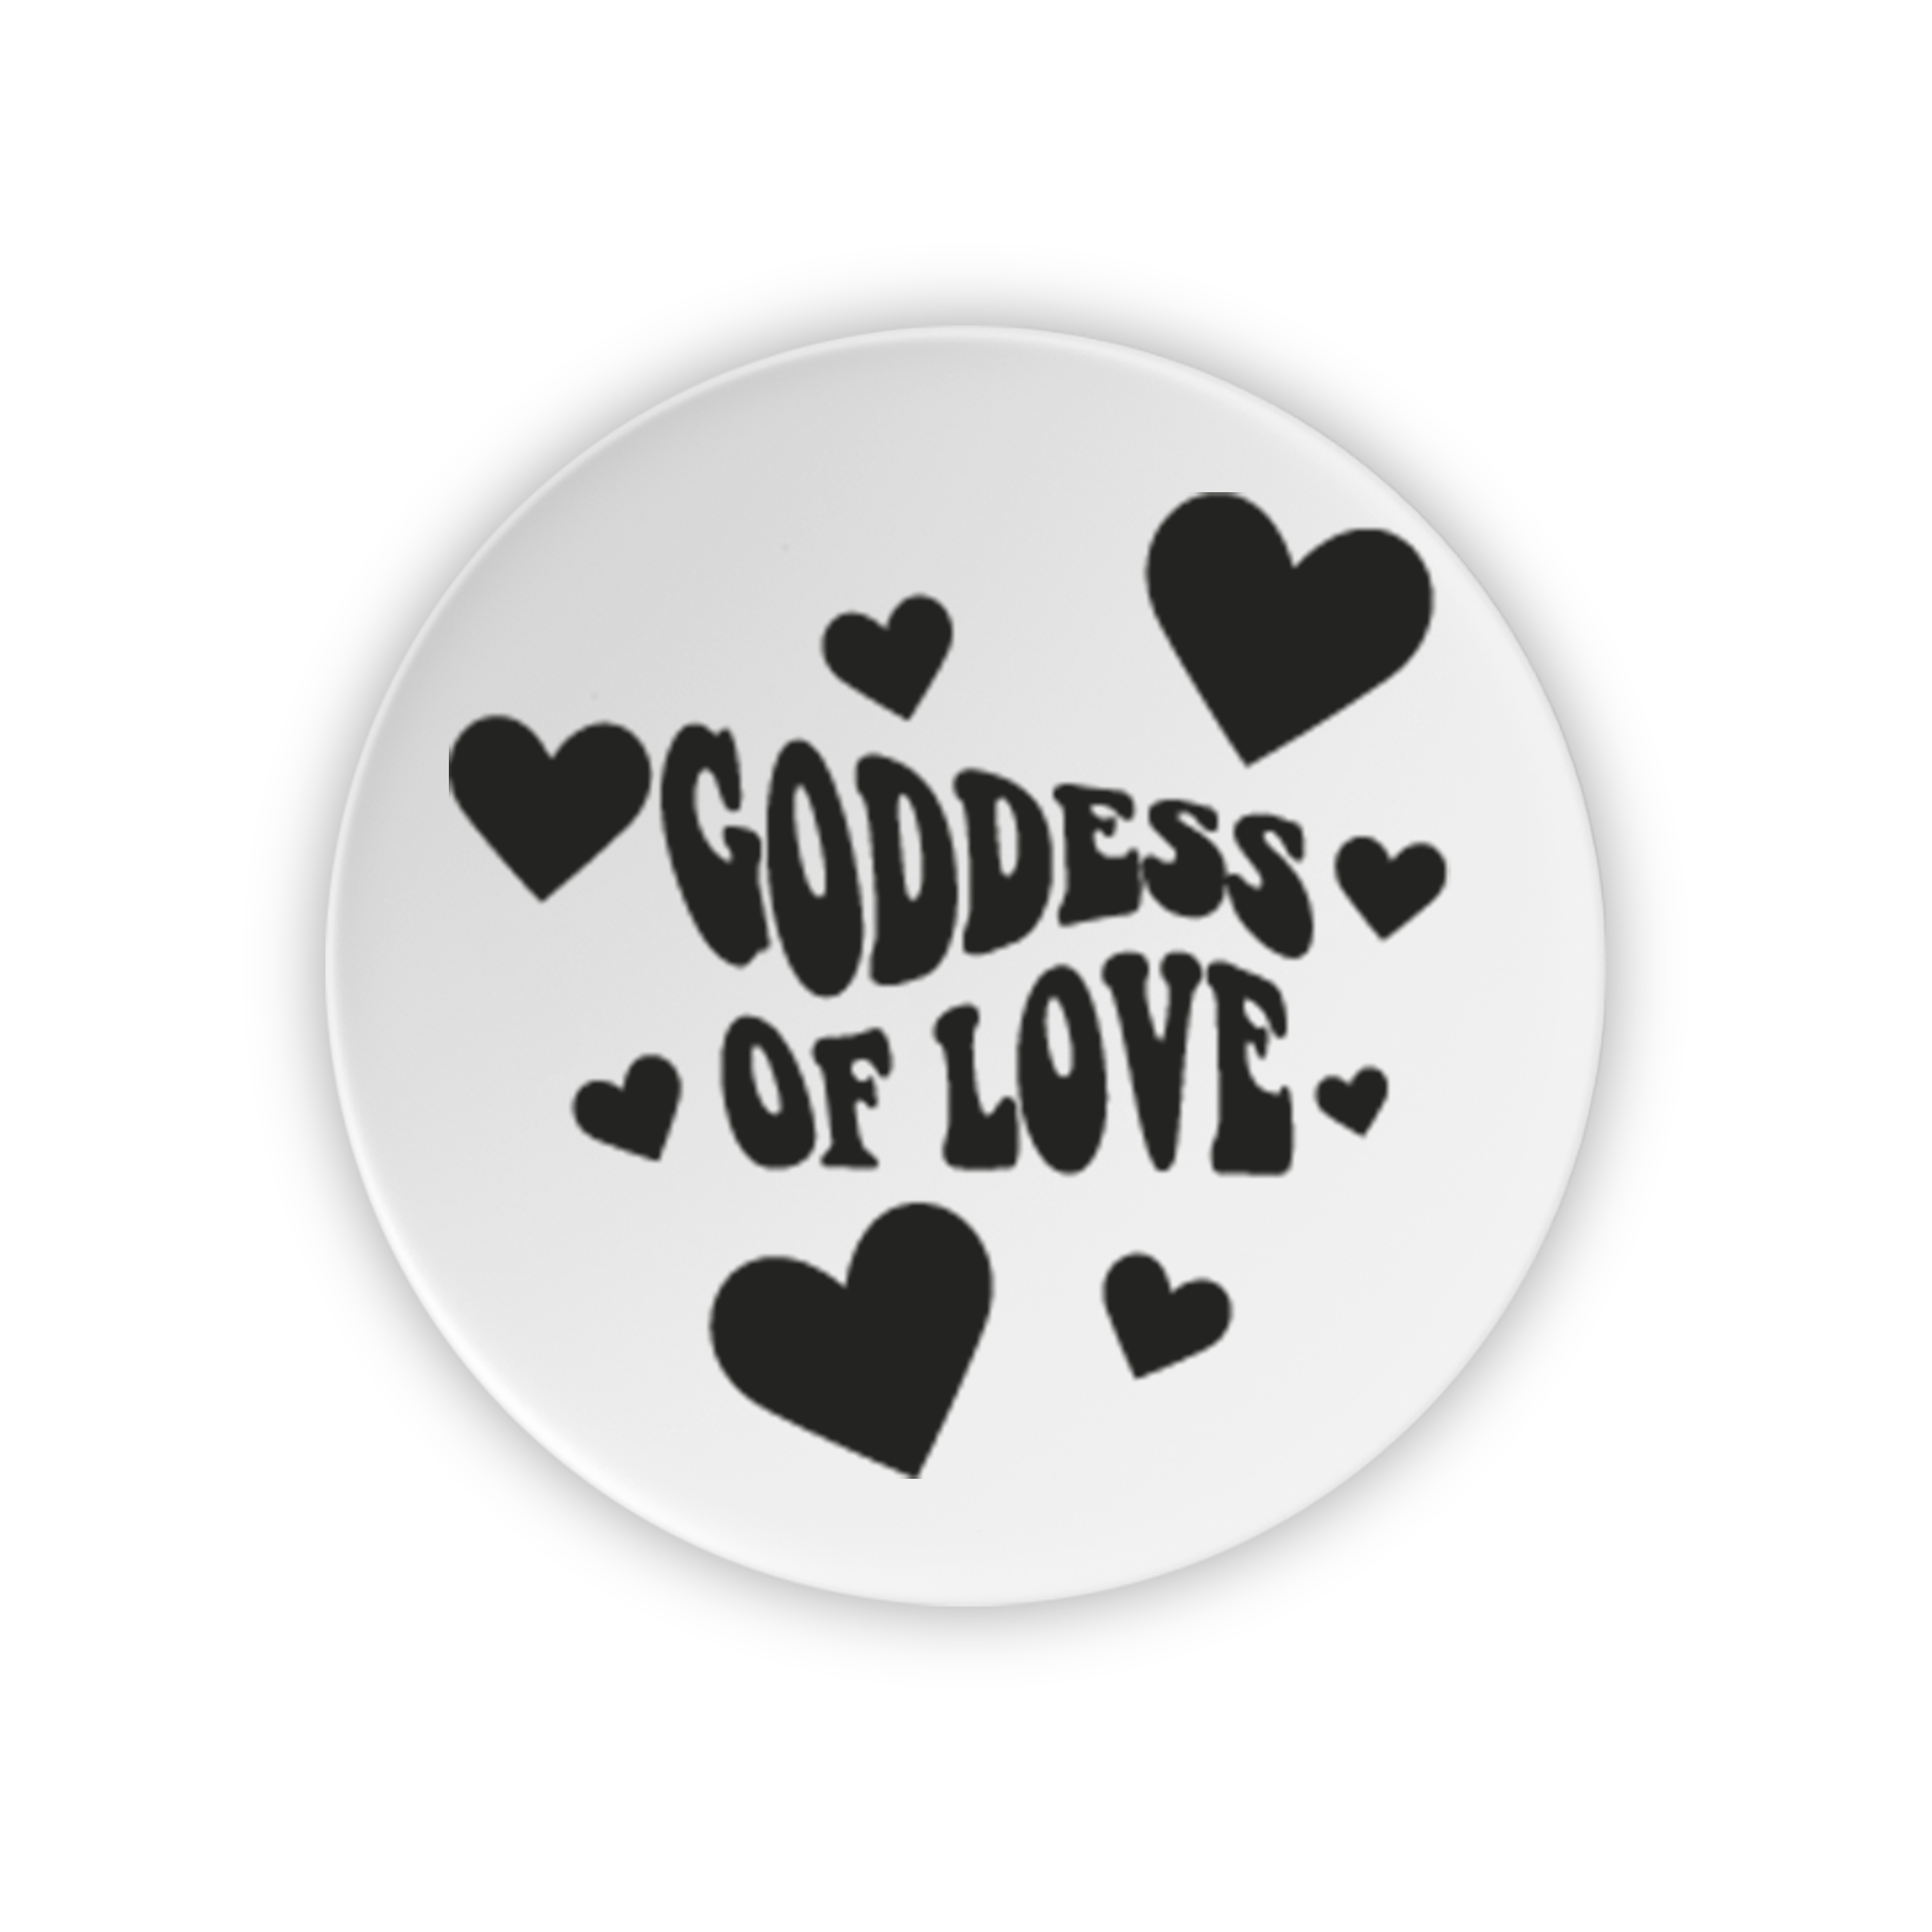 Goddess of love negro Phone holder - Mandala Cases